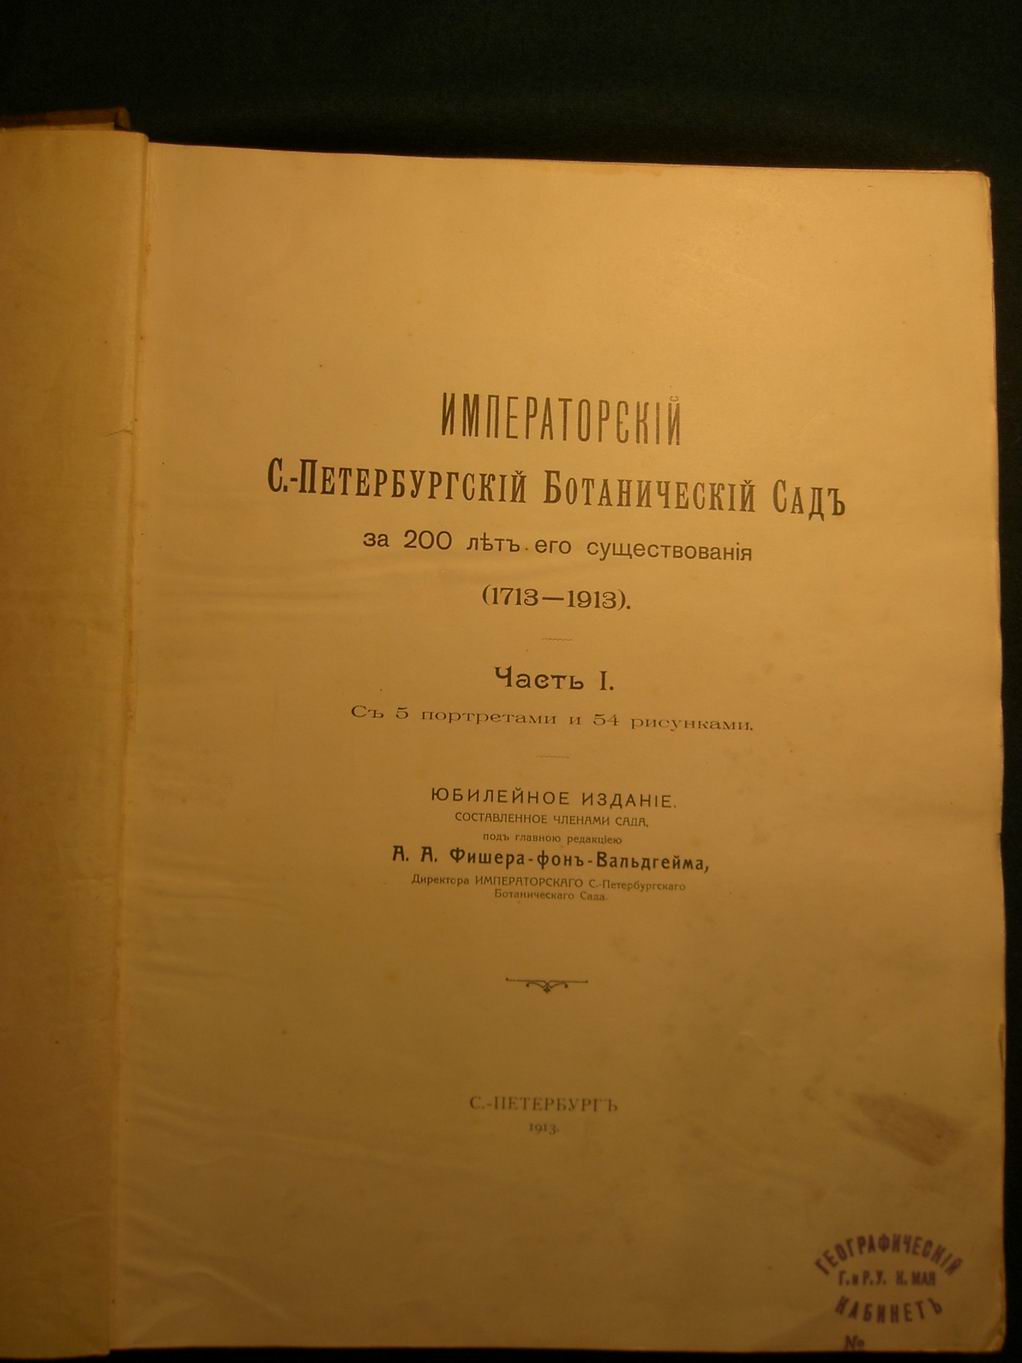 Книга из библиотеки гимназии К.Мая. <span style="background-color: rgb(255, 255, 255);">Фрагмент экспозиции периода 1856-1917 гг. </span>